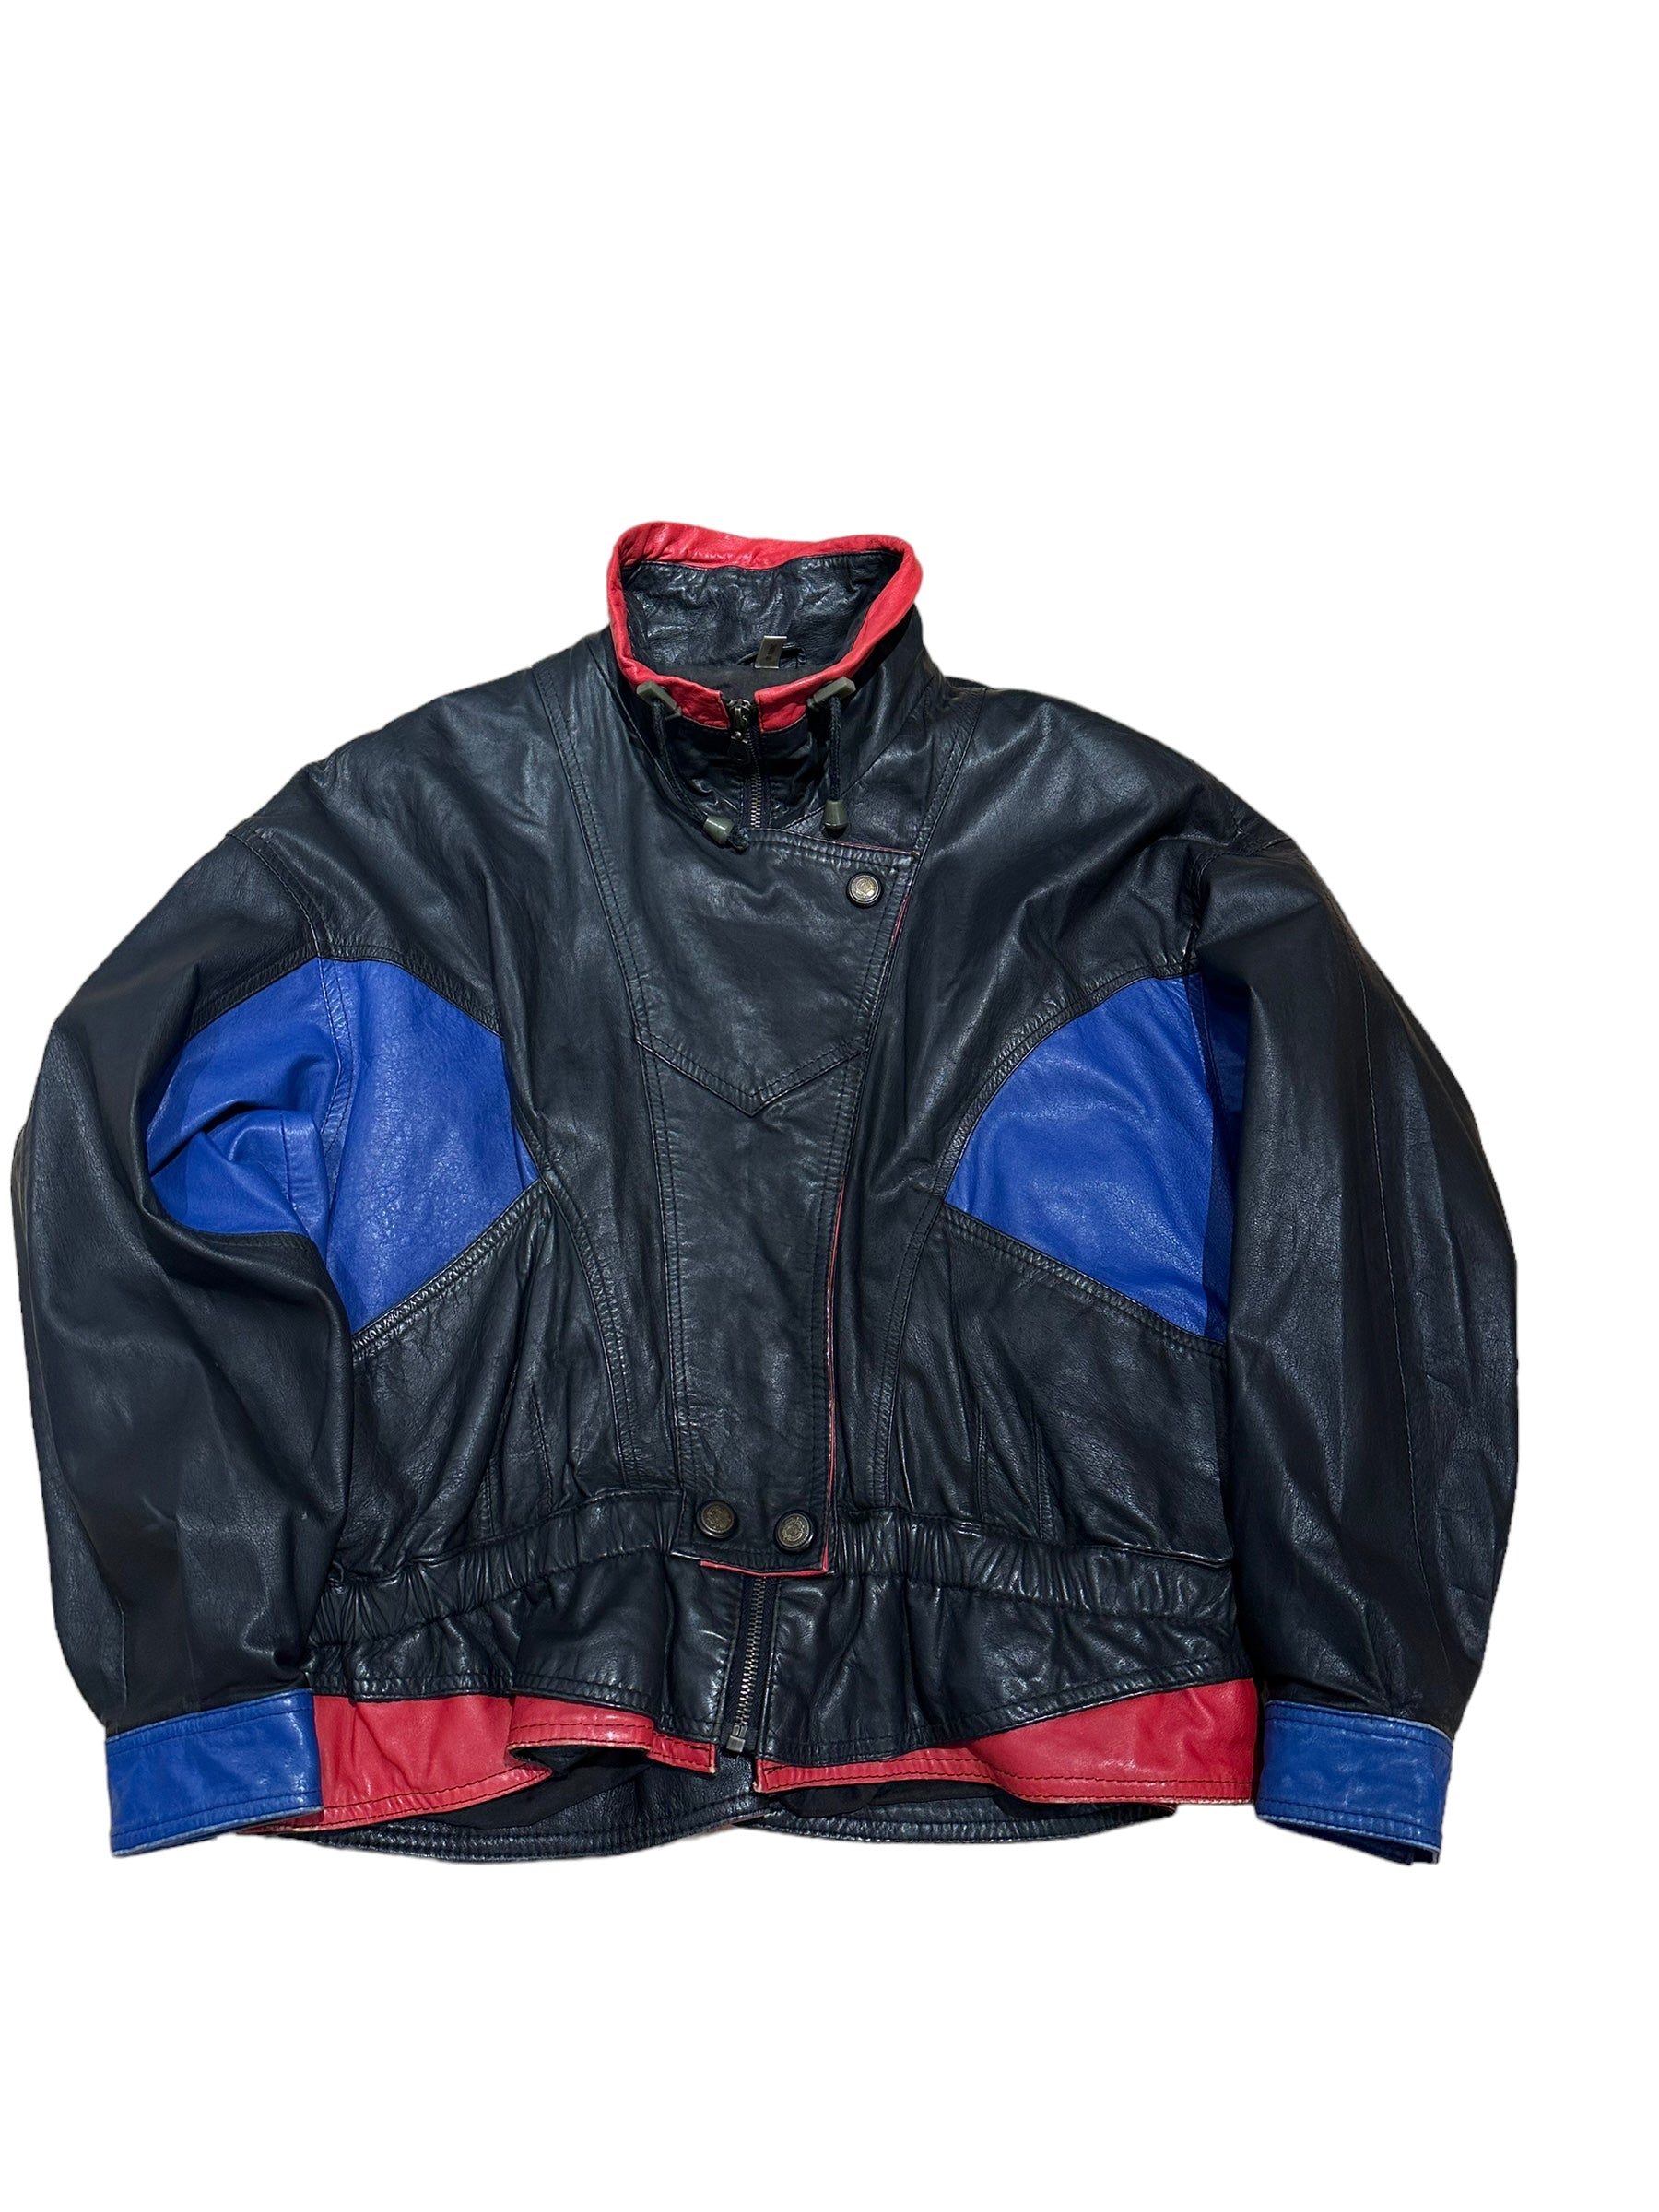 Vintage 80s leather jacket M